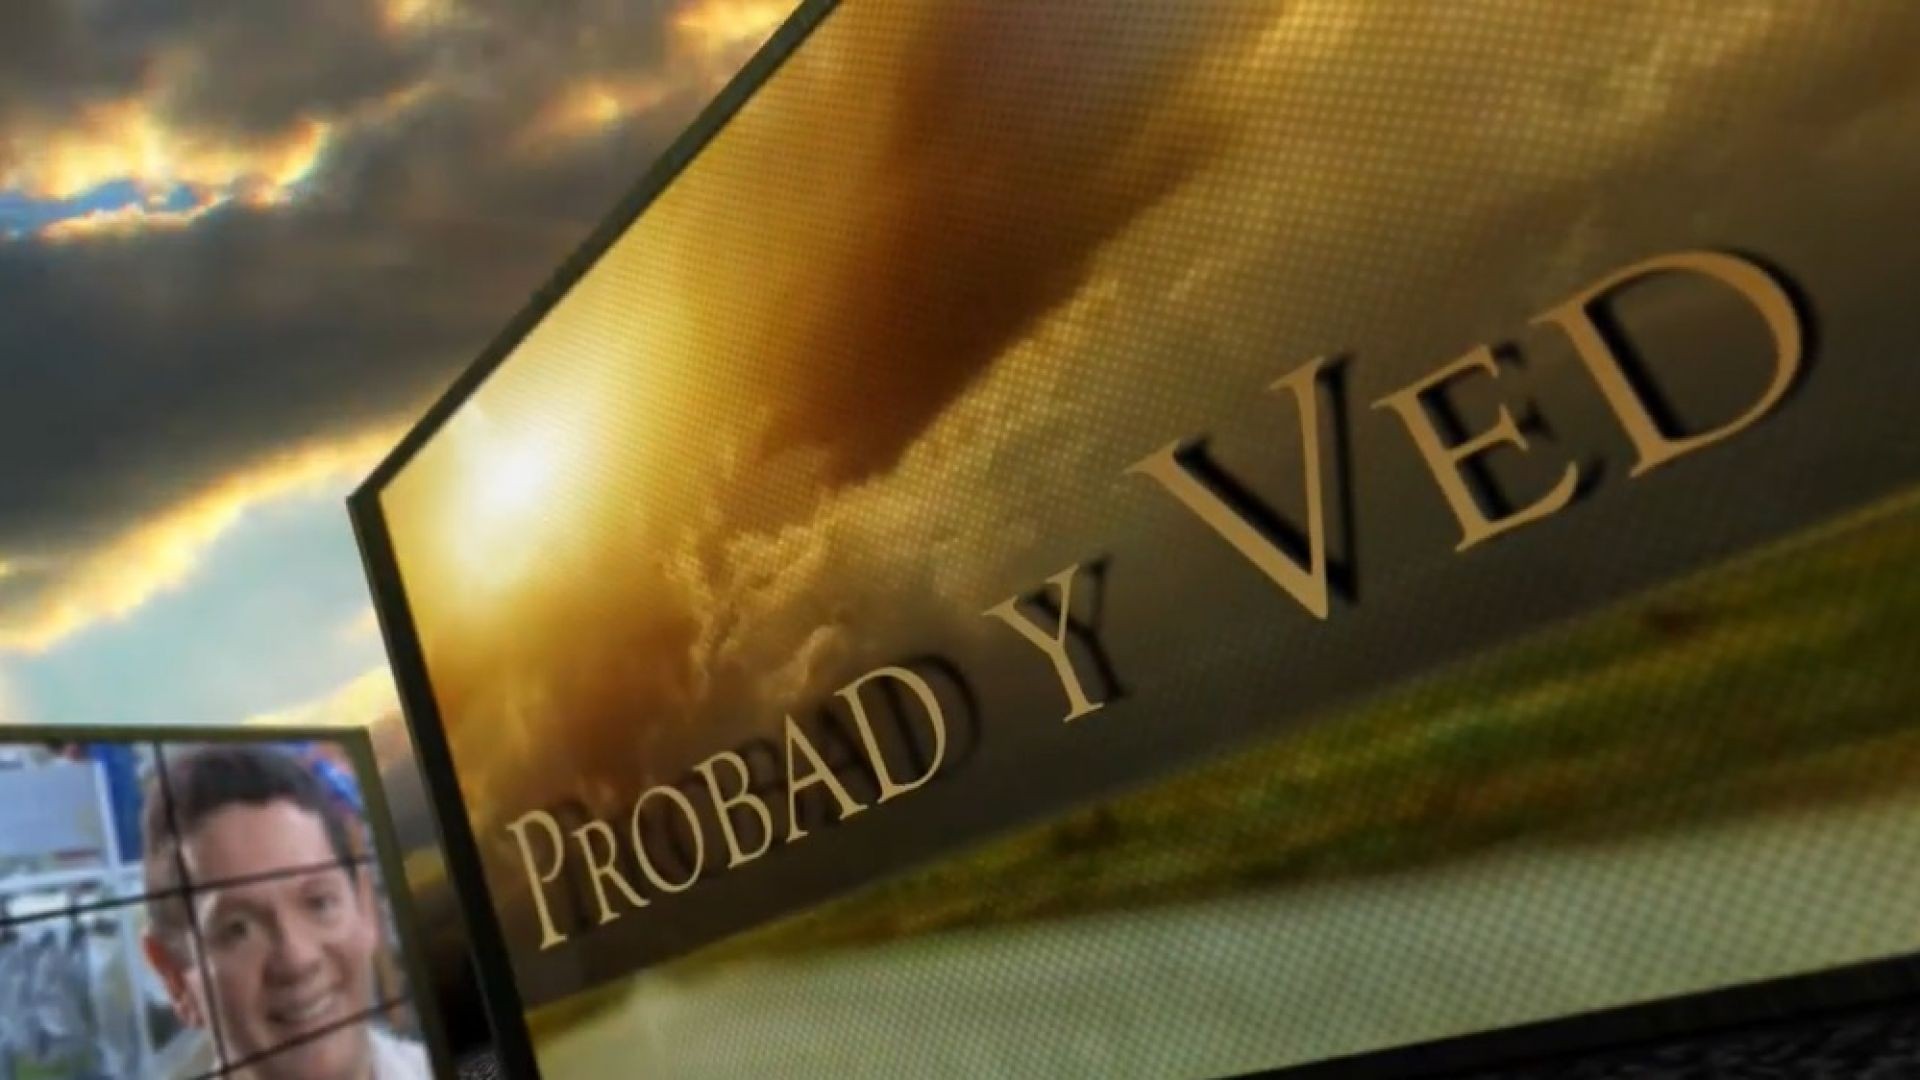 Probad y Ved 2013 - Confianza plena - 14/Dic